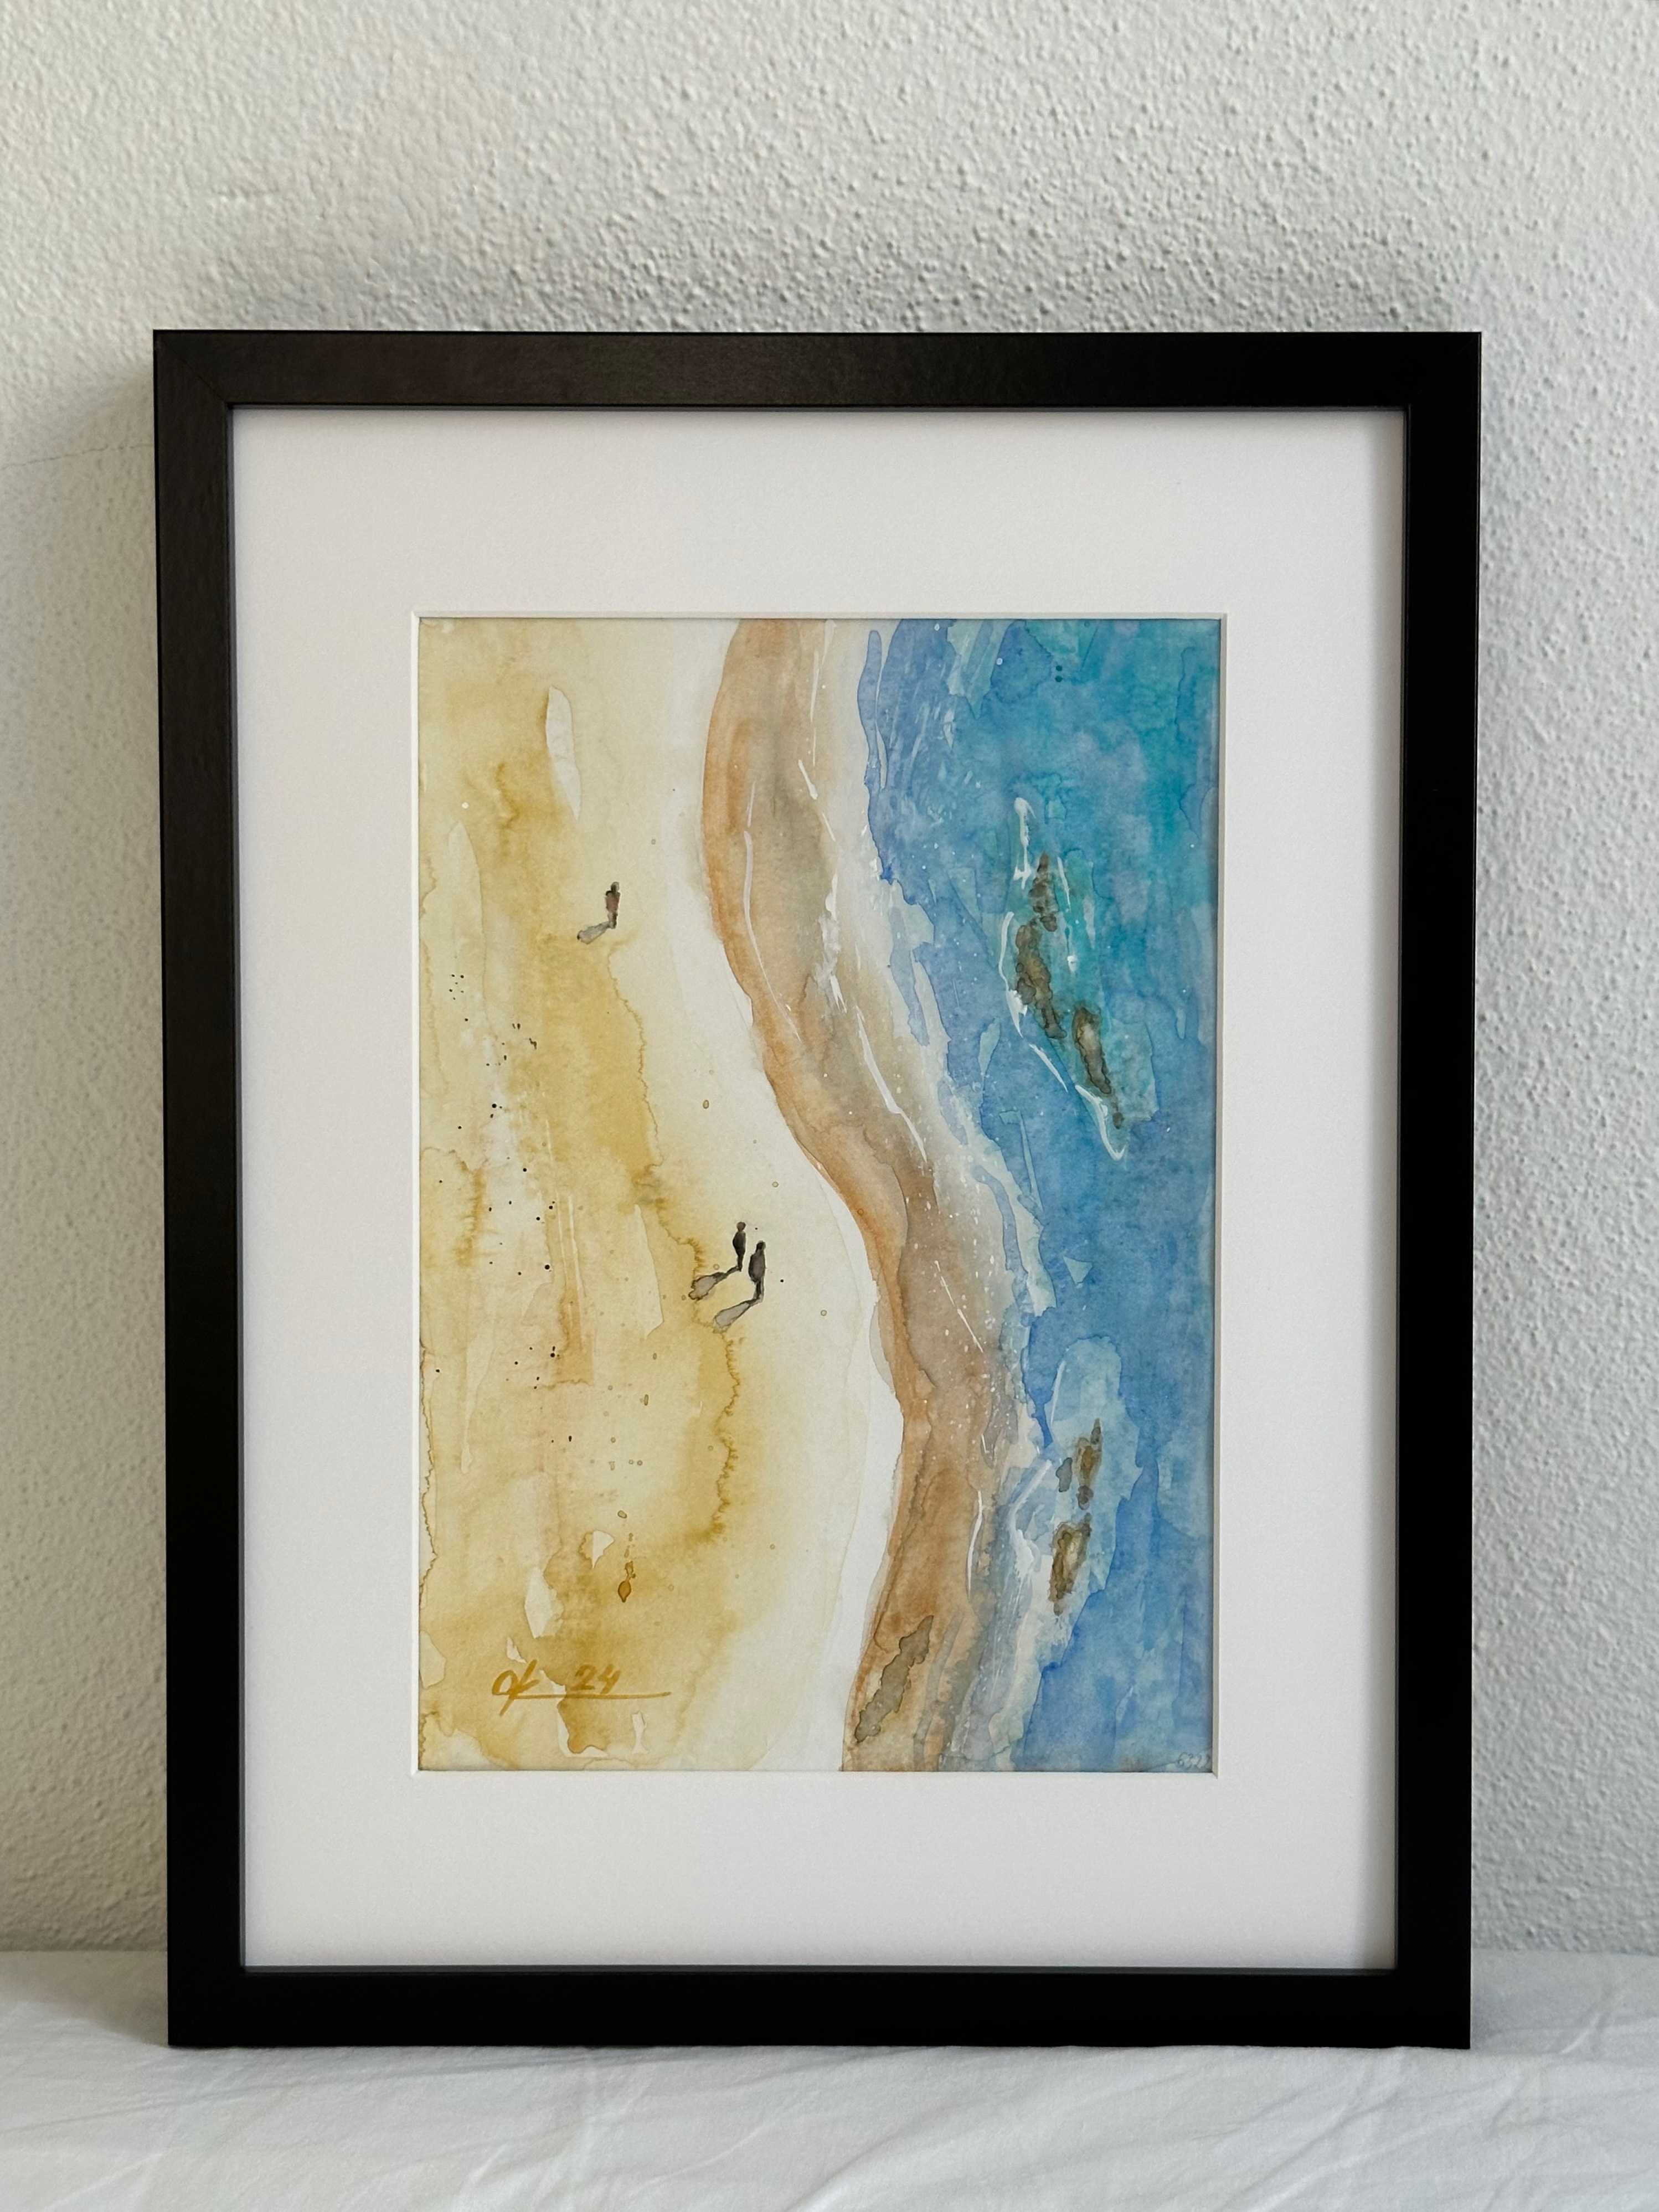 Horas na praia dourada - Pintura a aguarela sobre papel, emoldurada